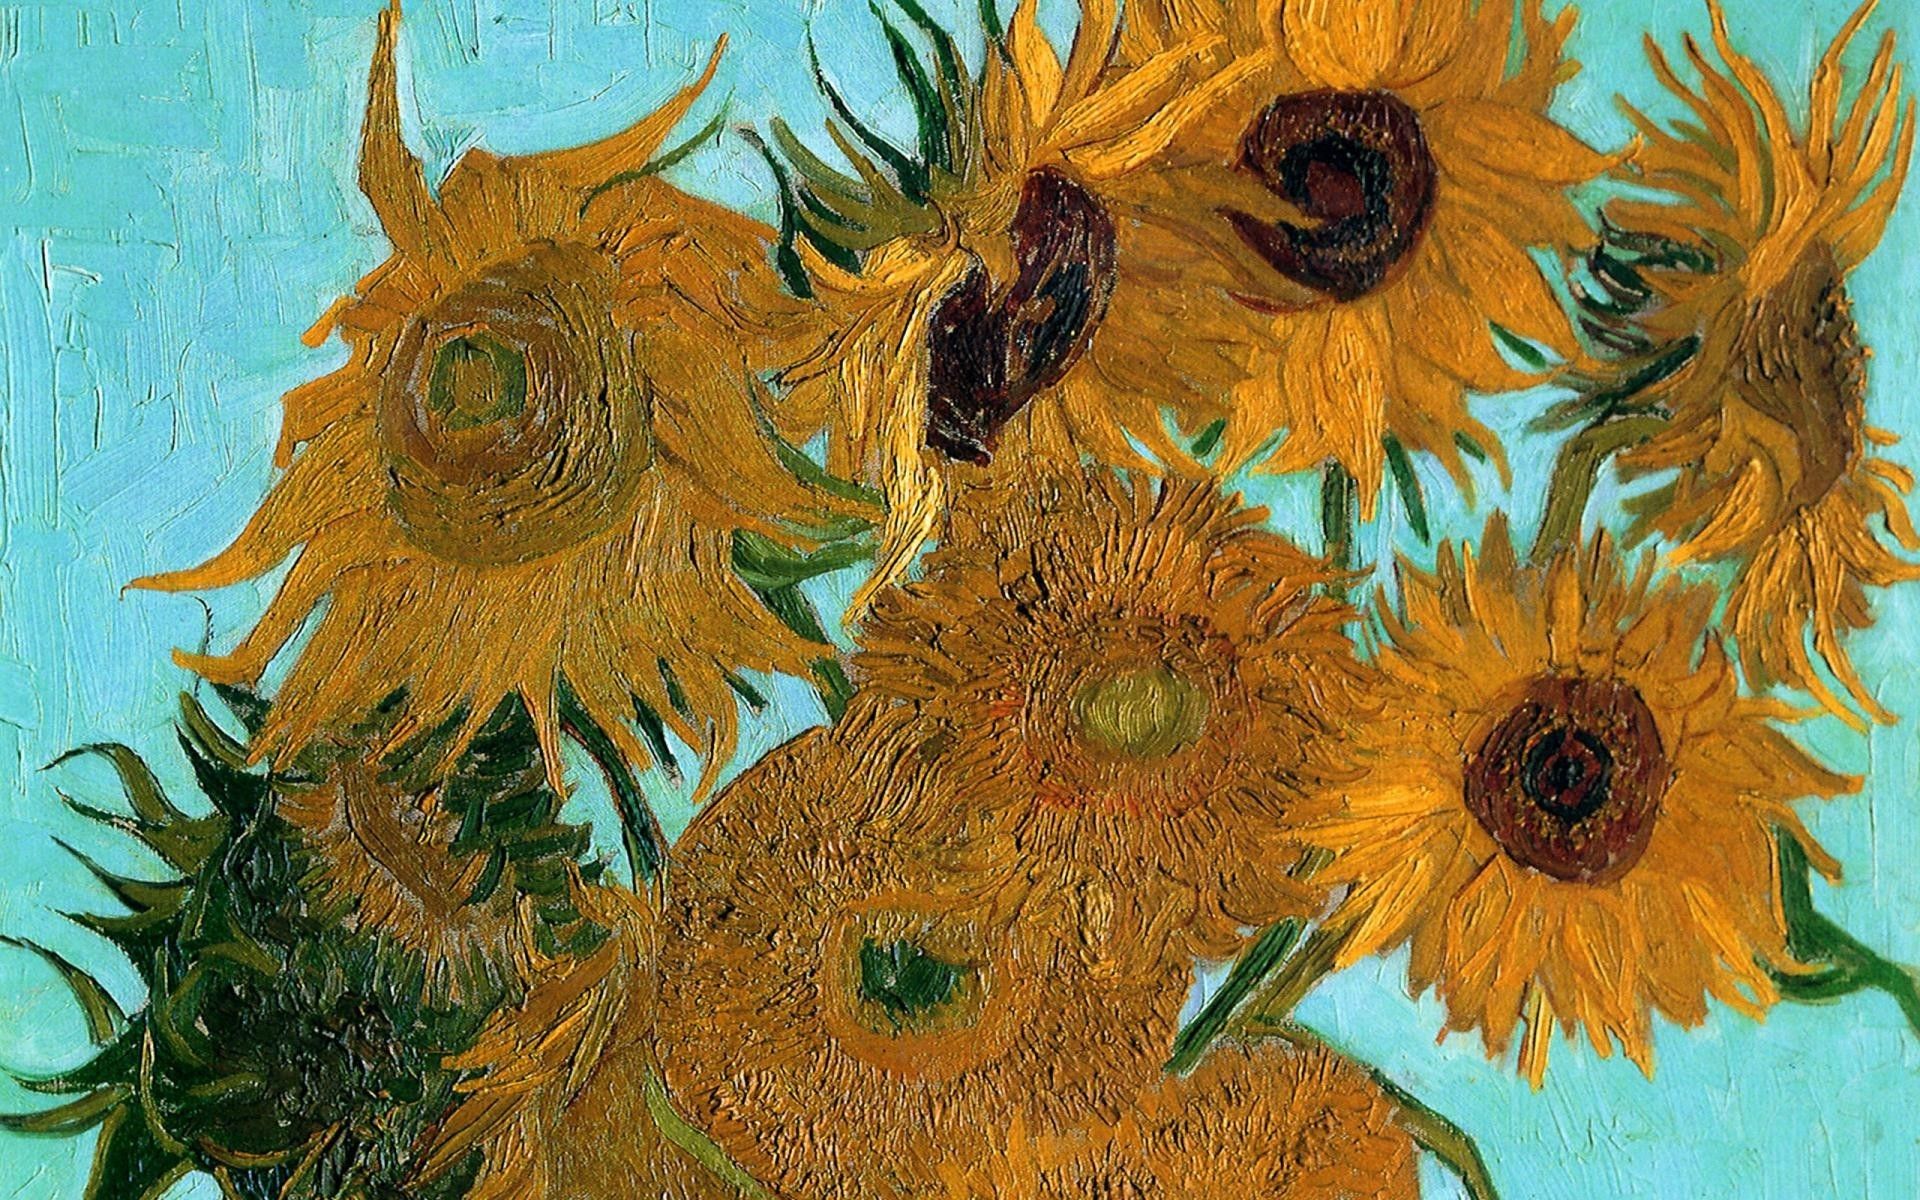 Fondos de Vincent Van Gogh (más de 50 imágenes de fondo)